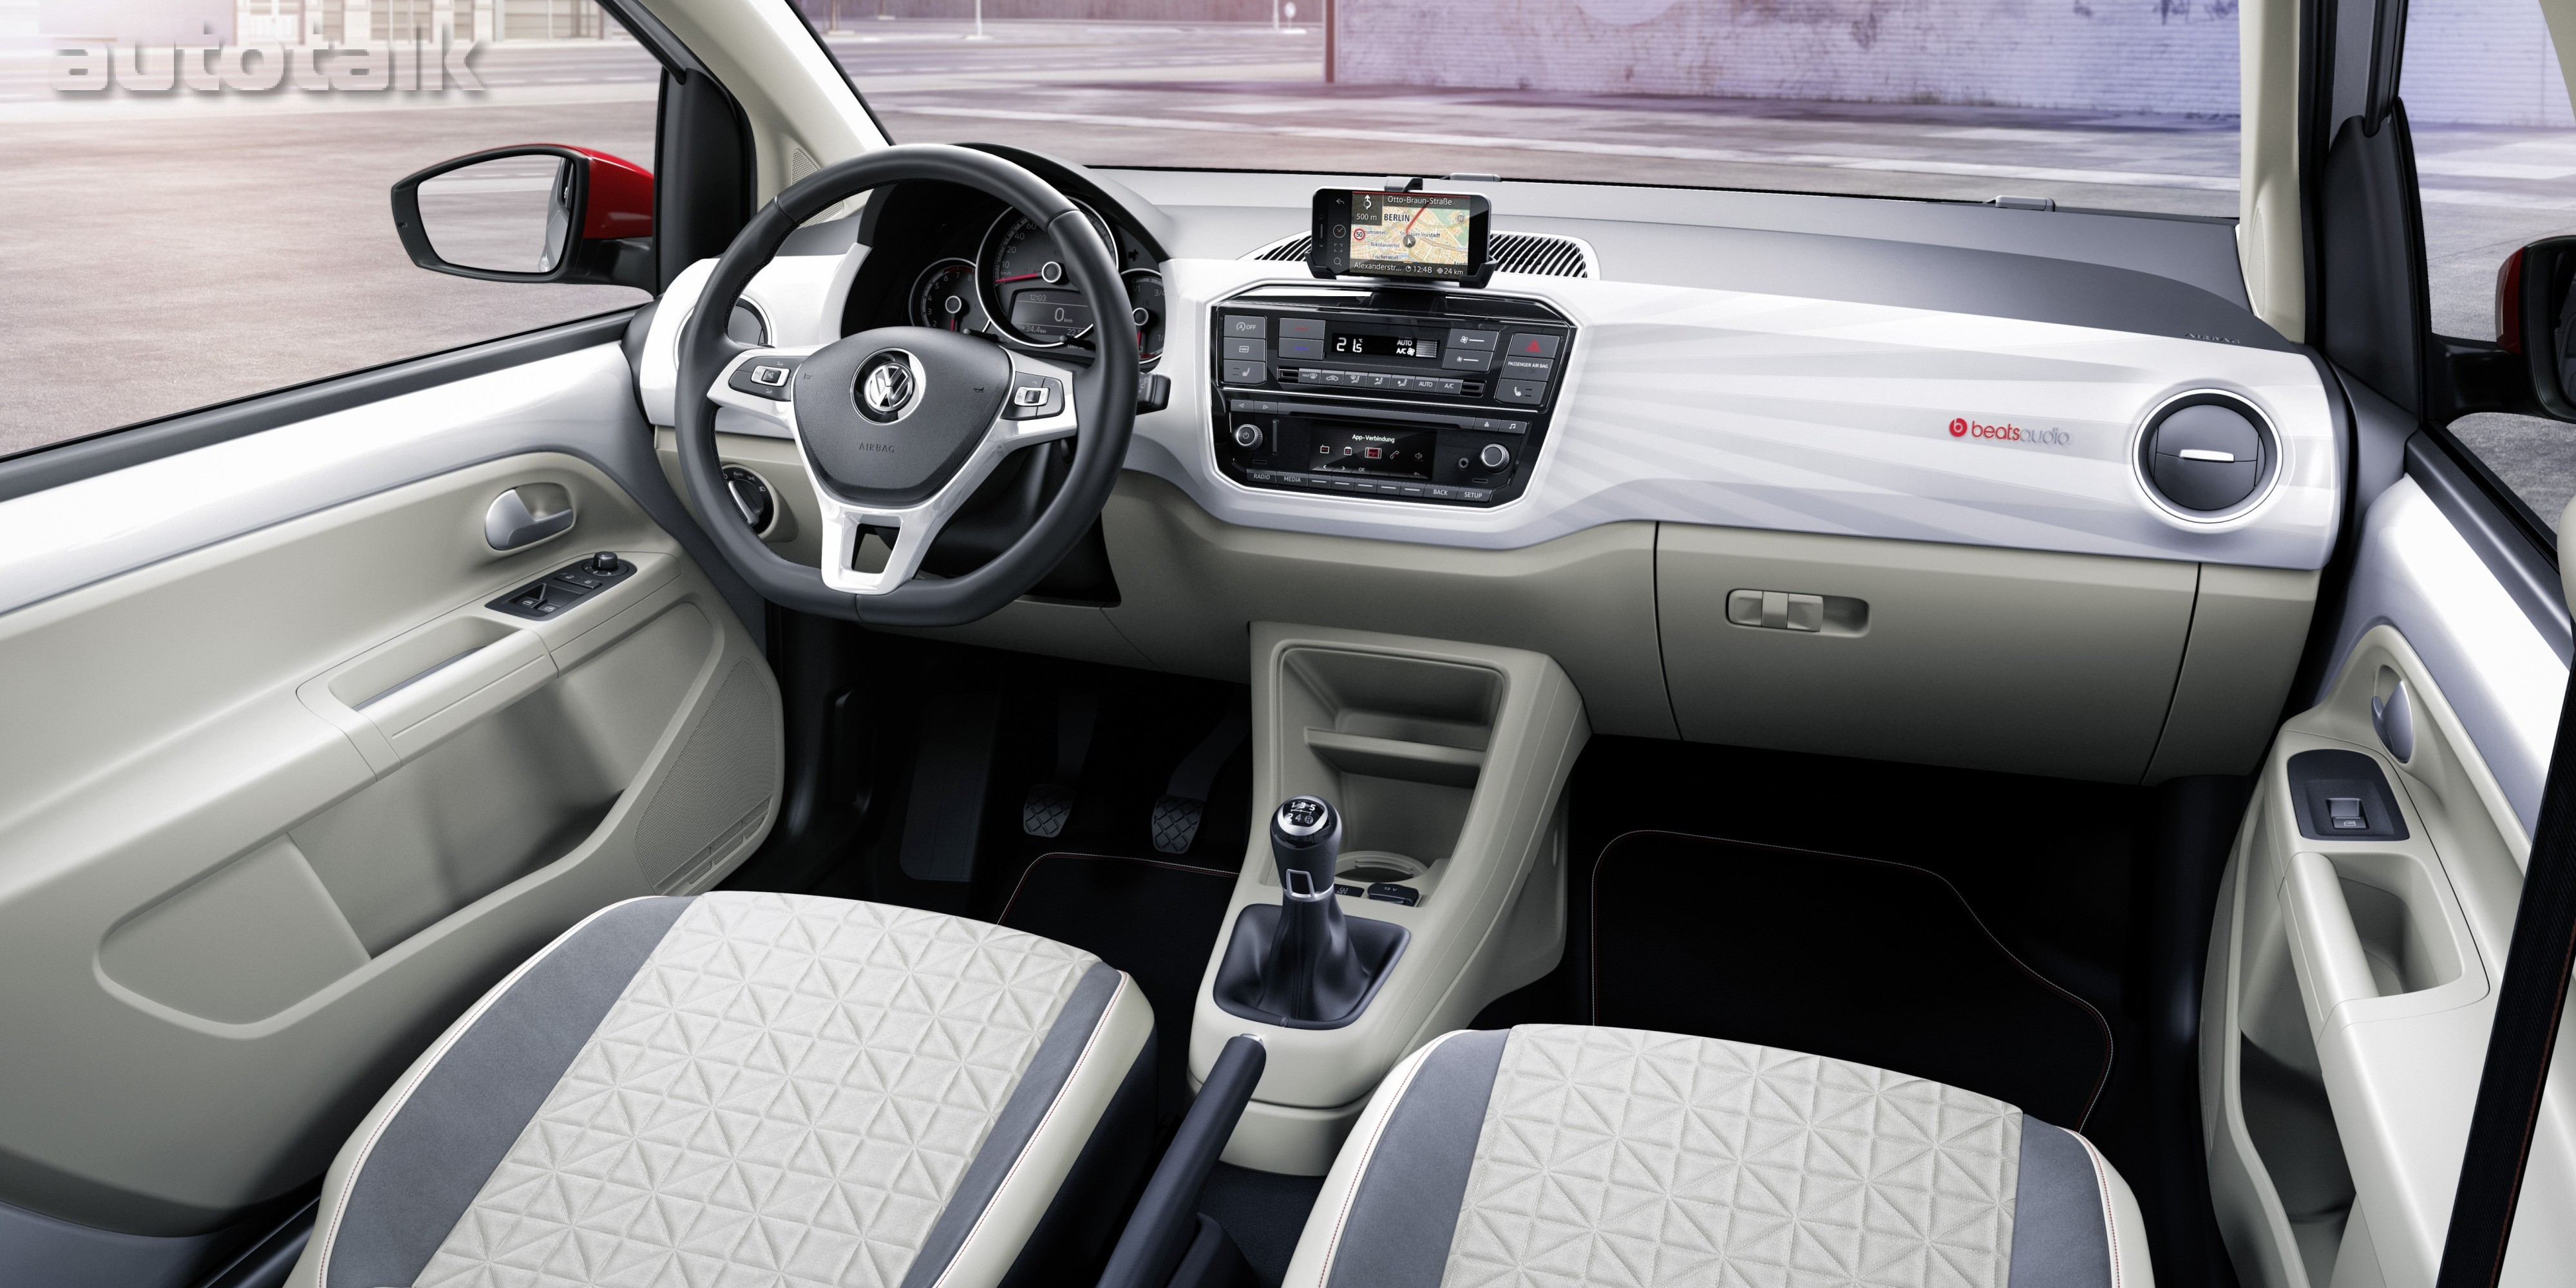 2017 Volkswagen Up! Interior